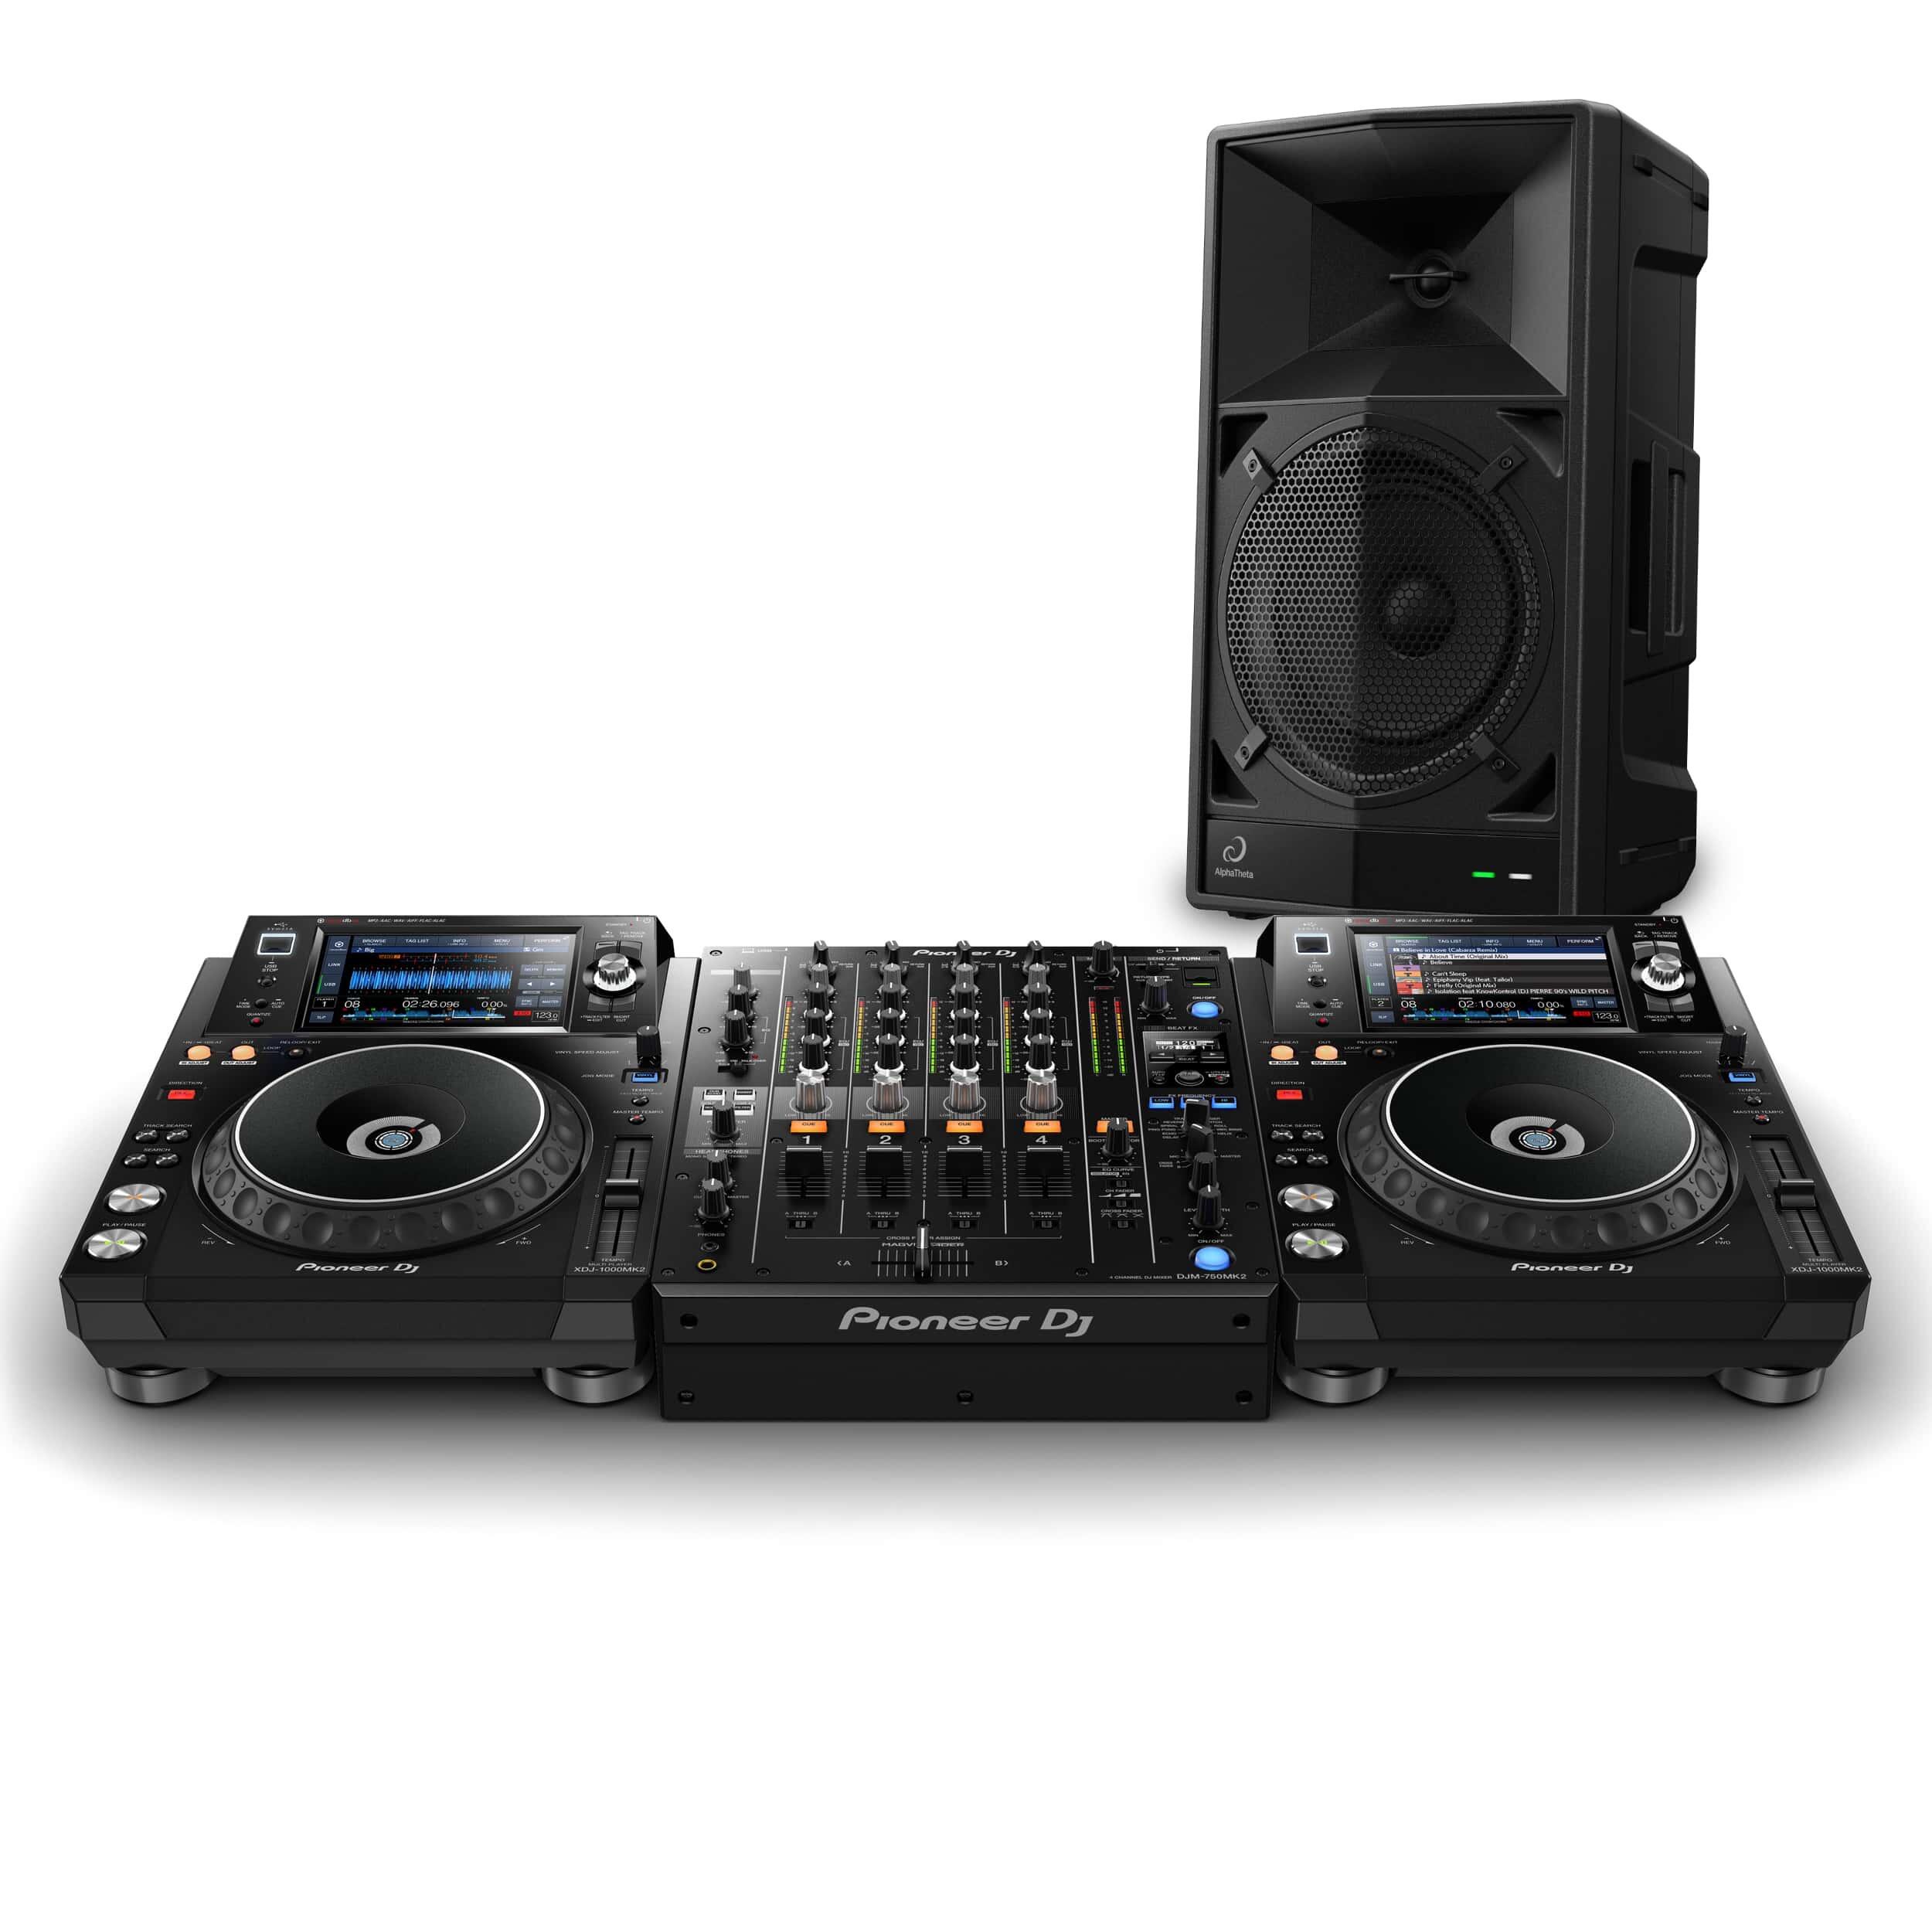 Pioneer DJ DJM-250MK2 rekordbox DVS Package